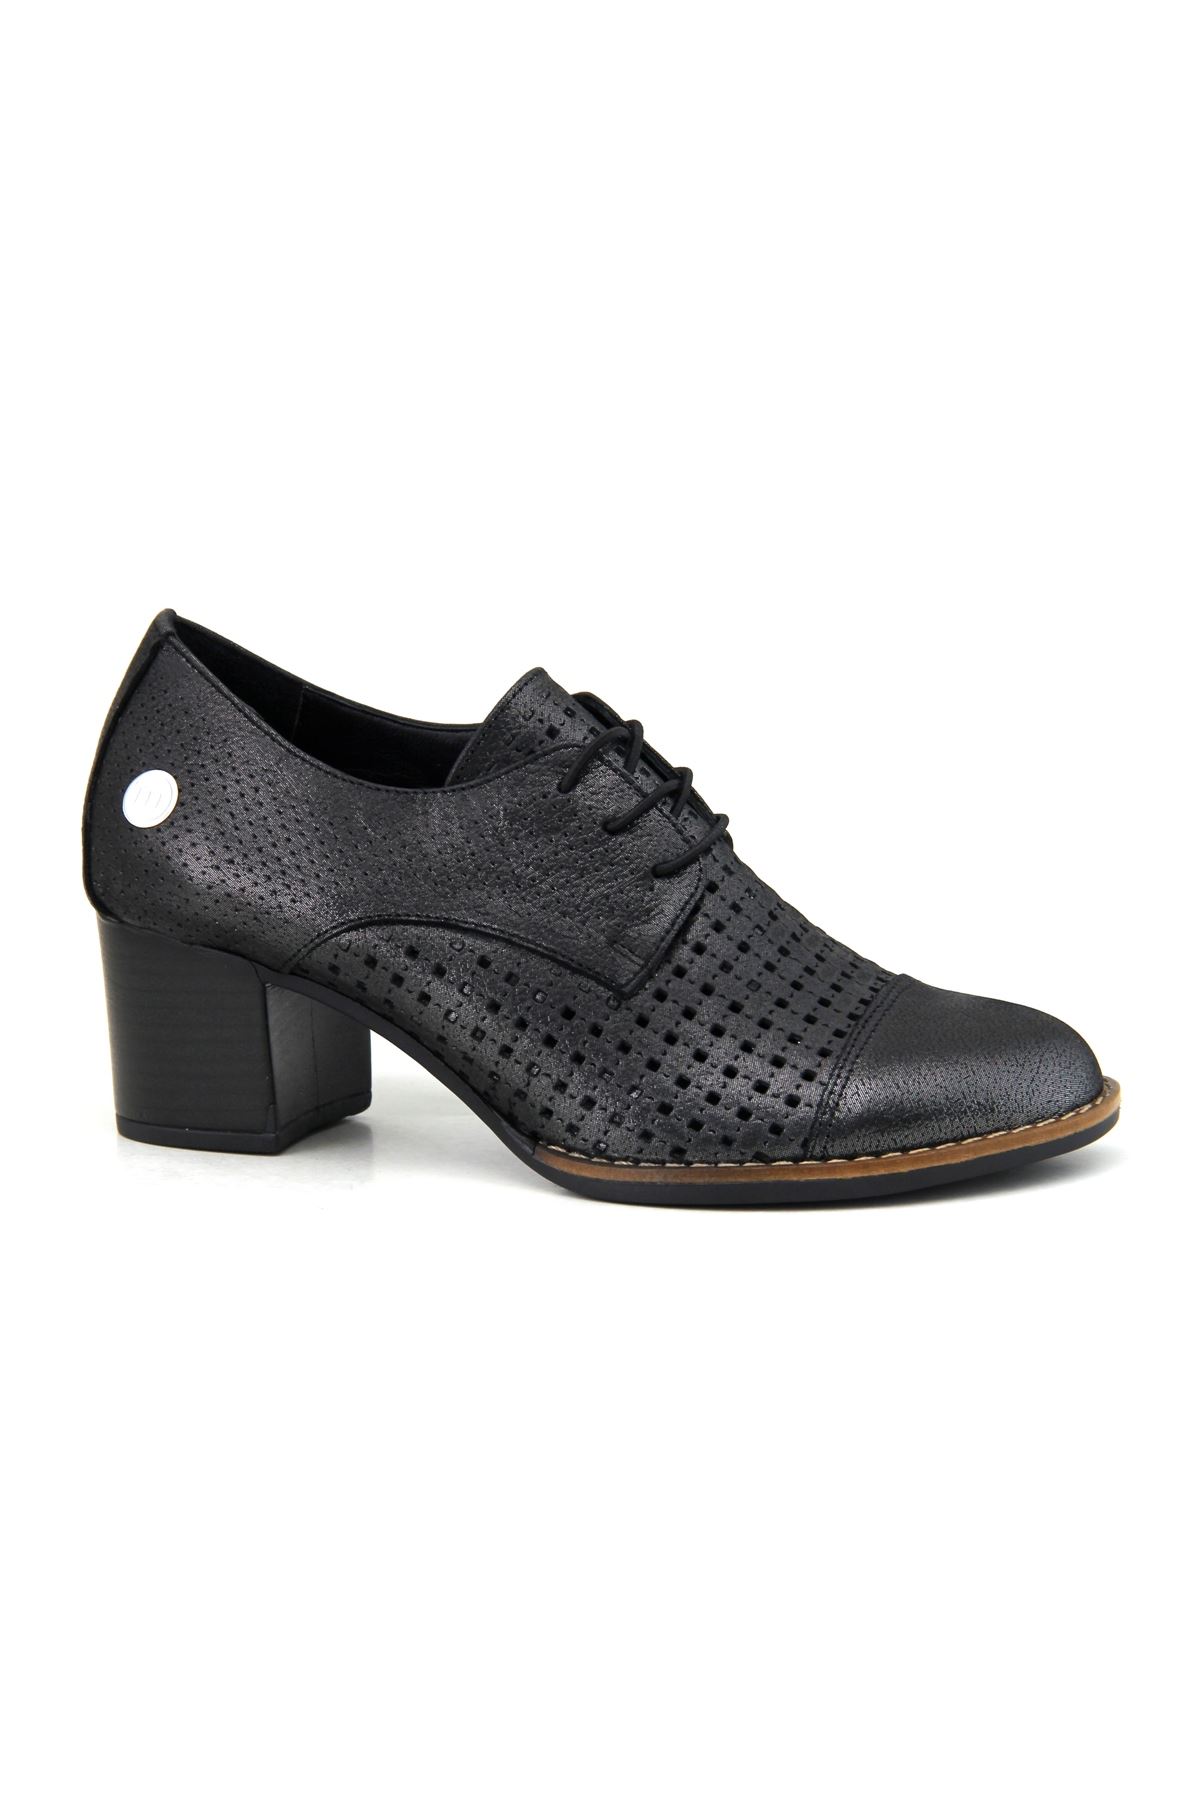 Mammamia D23YA-350 Hakiki Deri Kadın Ayakkabı - Siyah Çelik